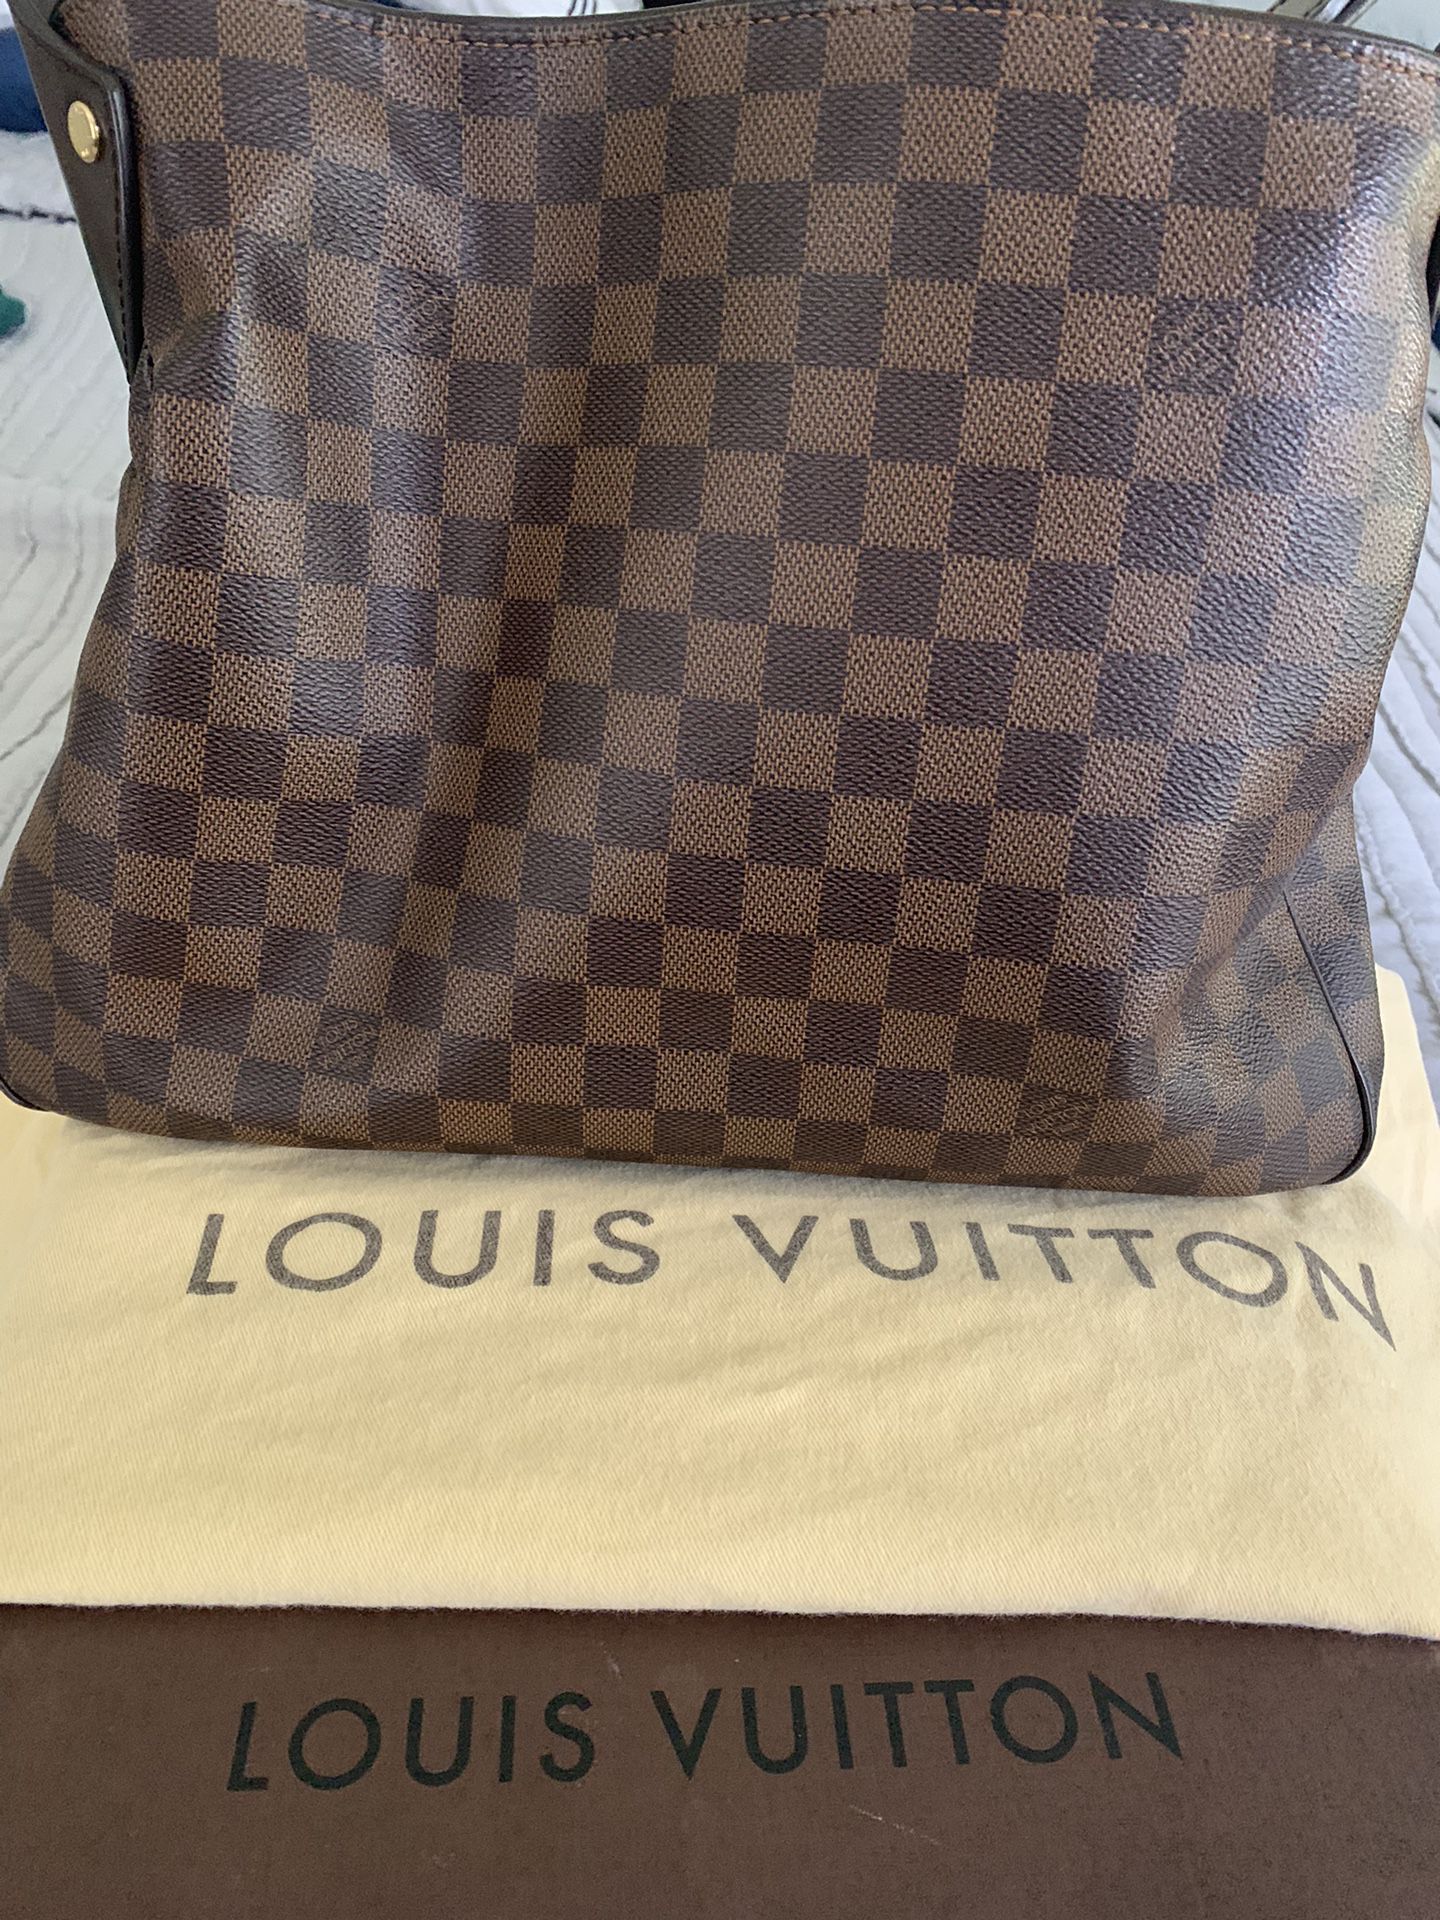 Authentic Louis Vuitton Reggia Damier Ebene Handbag - Limited